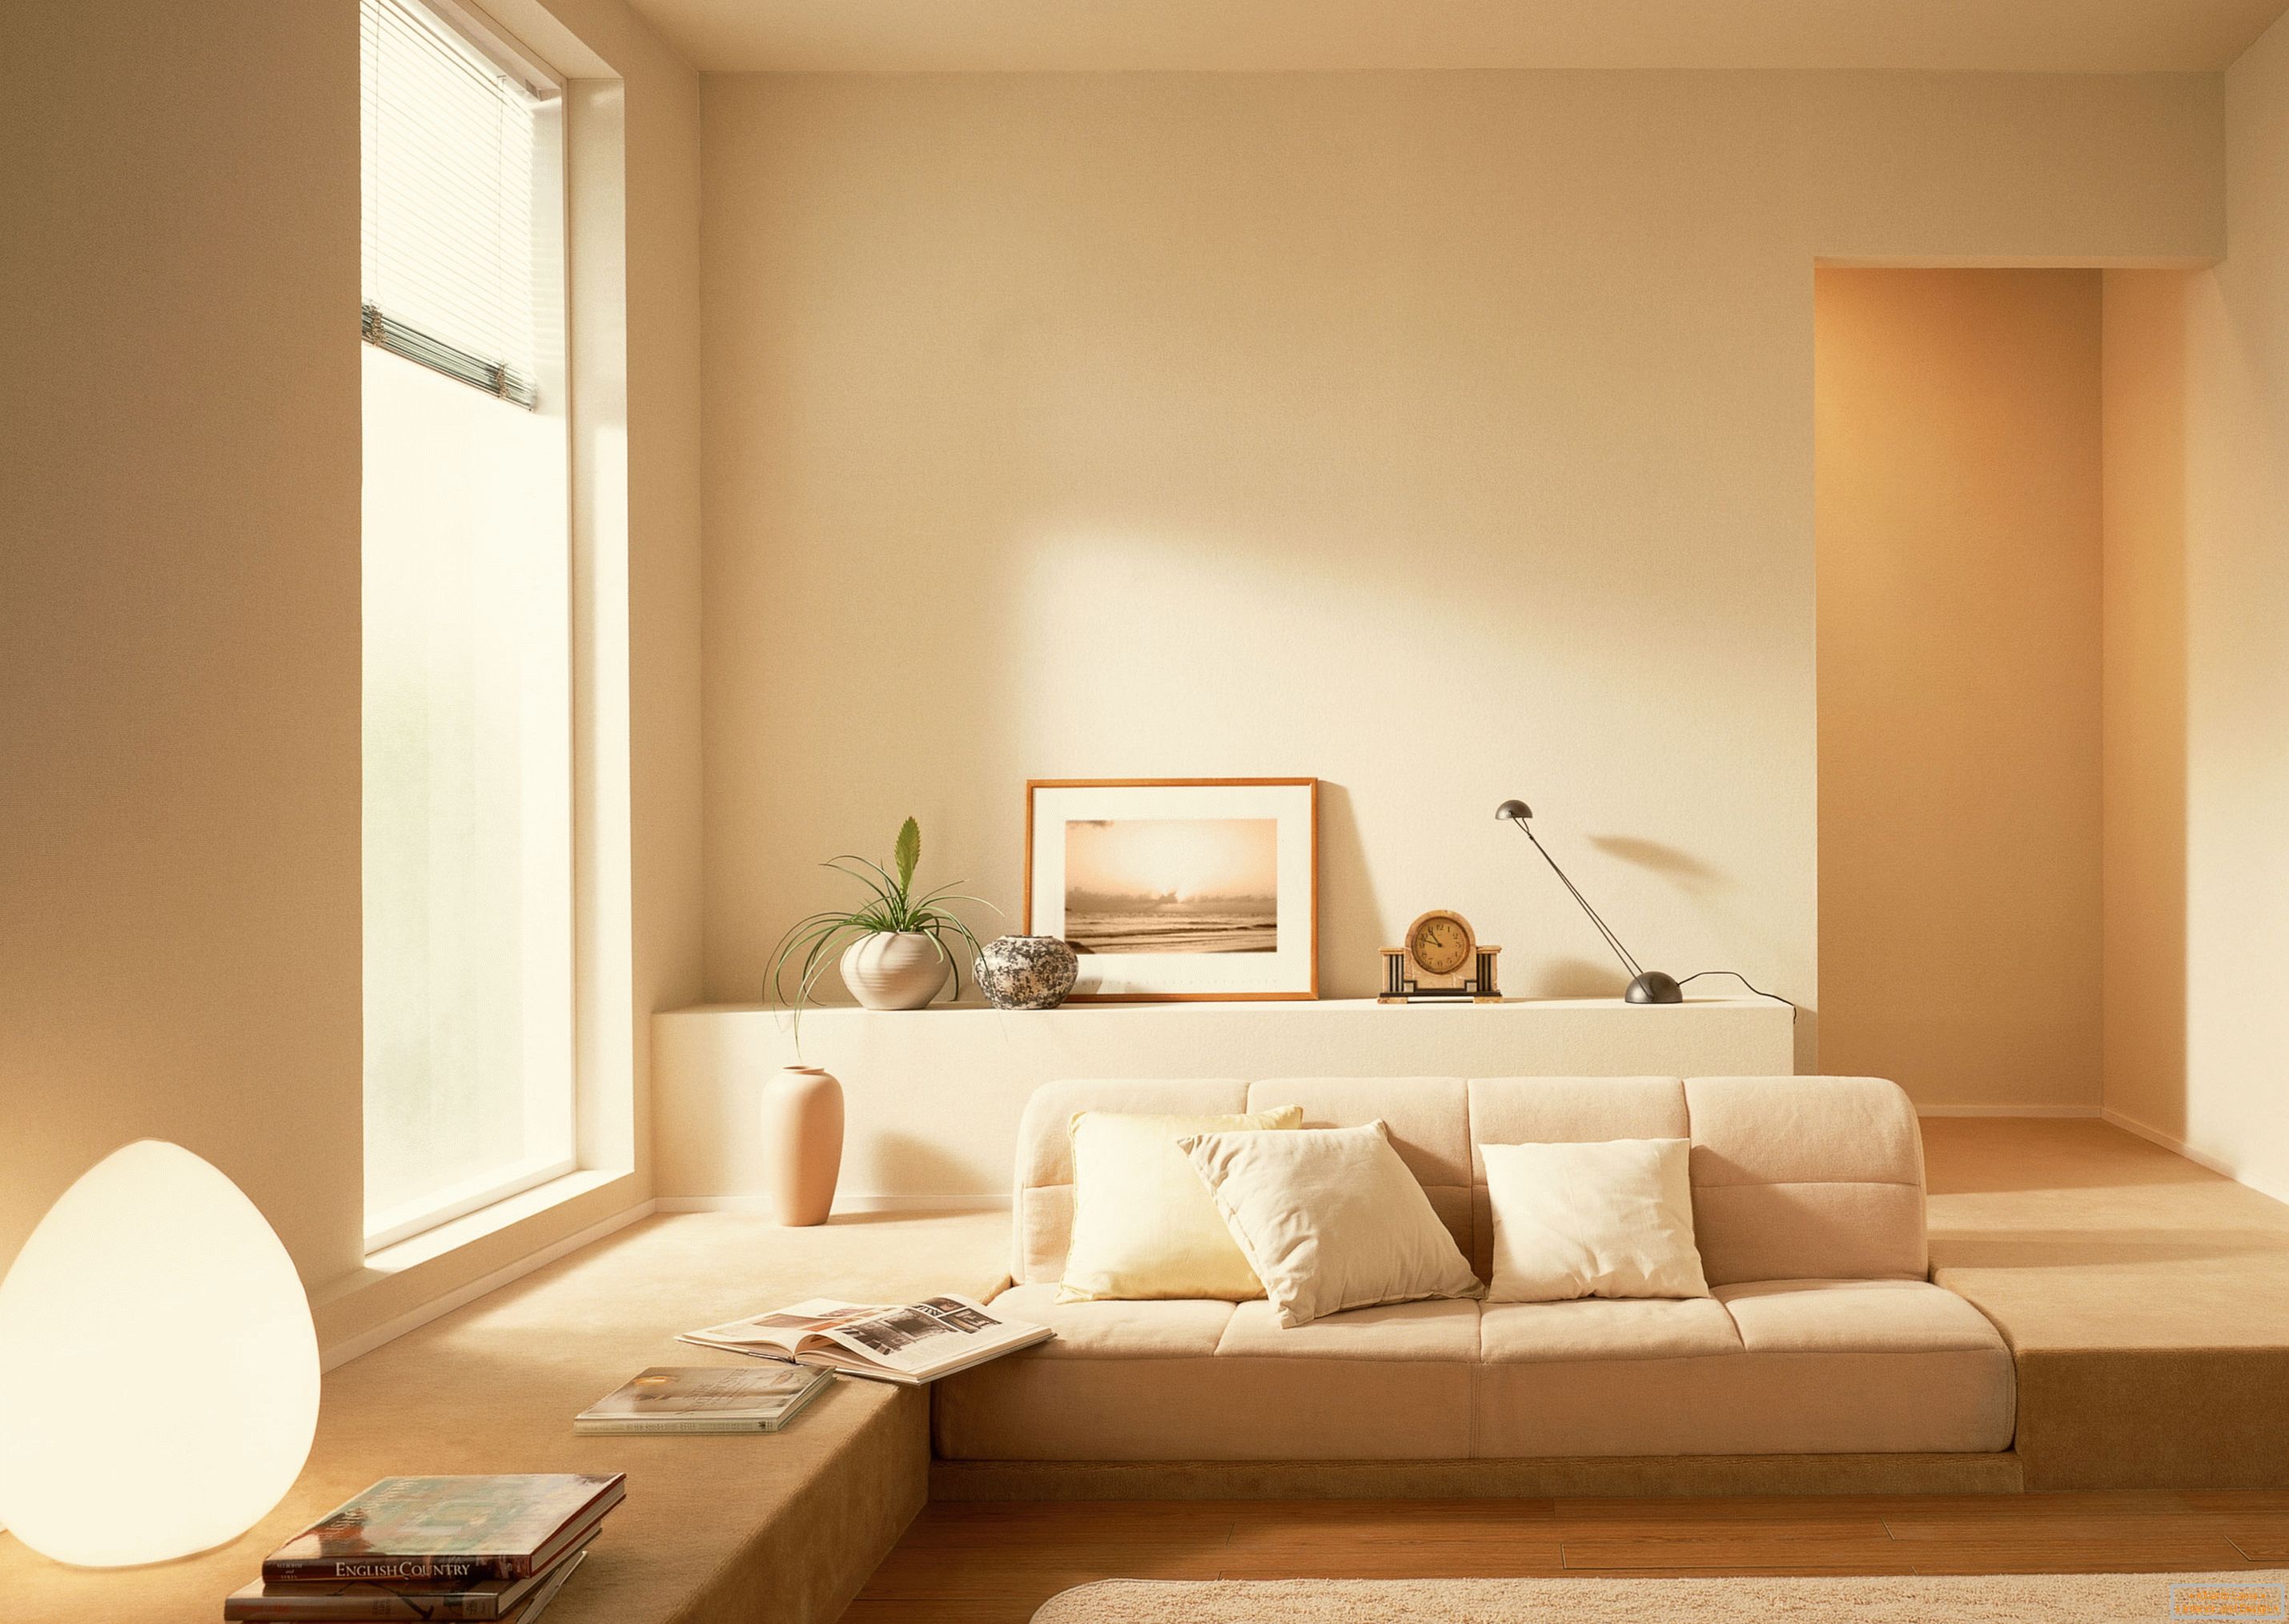 У складу са стилом минимализма, за организовање ентеријера дневне собе користи се мирна беж боје.